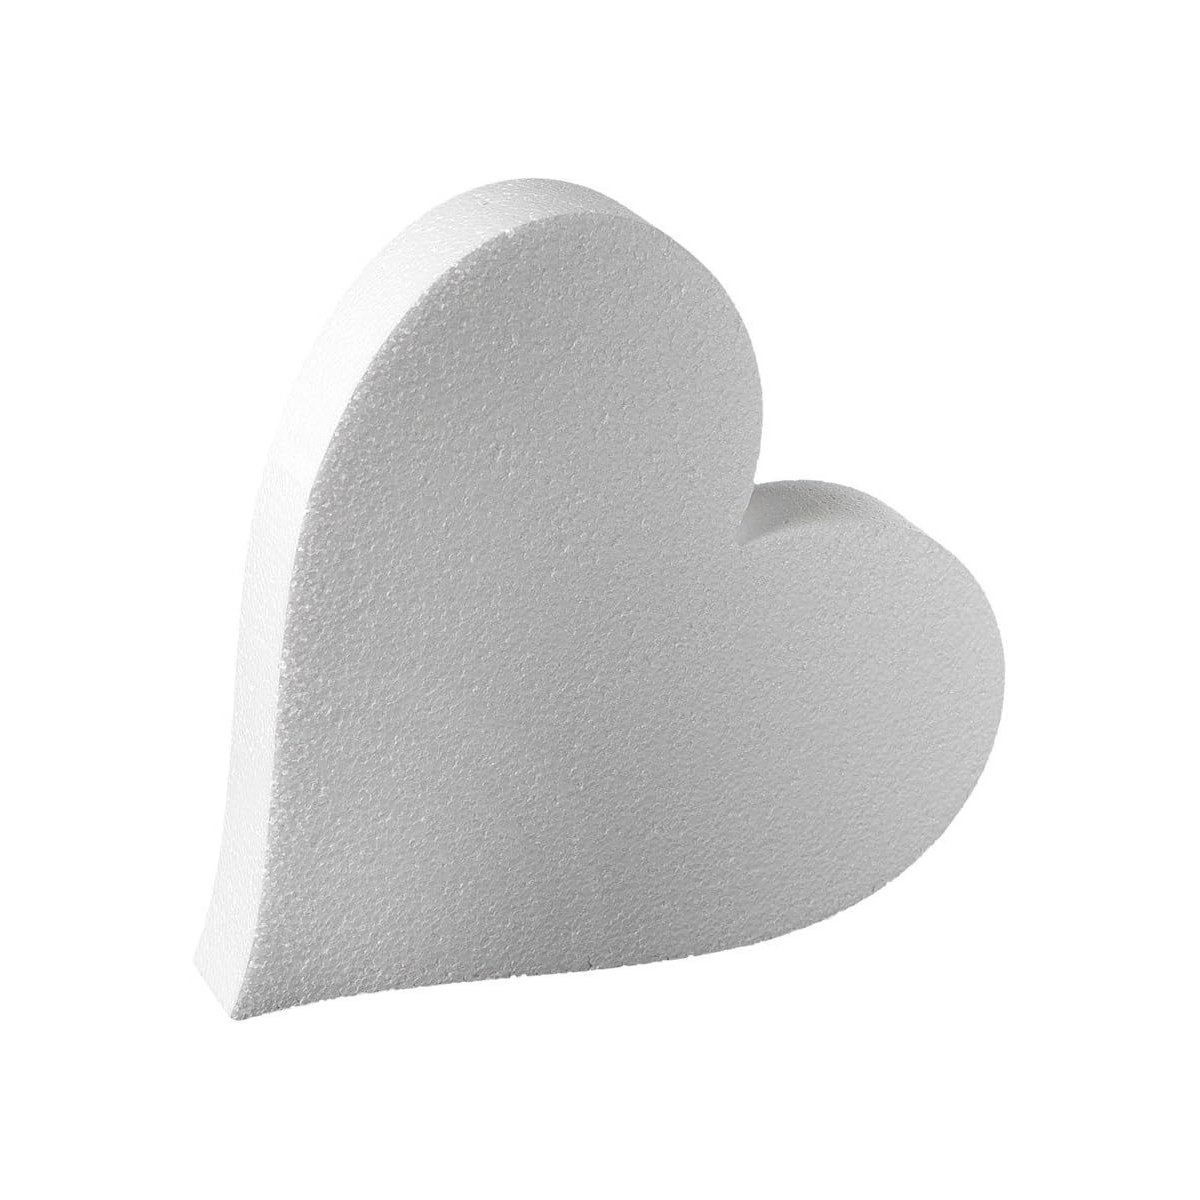 Base torta 30 cm forma cuore in polistirolo, per torte finte romantiche